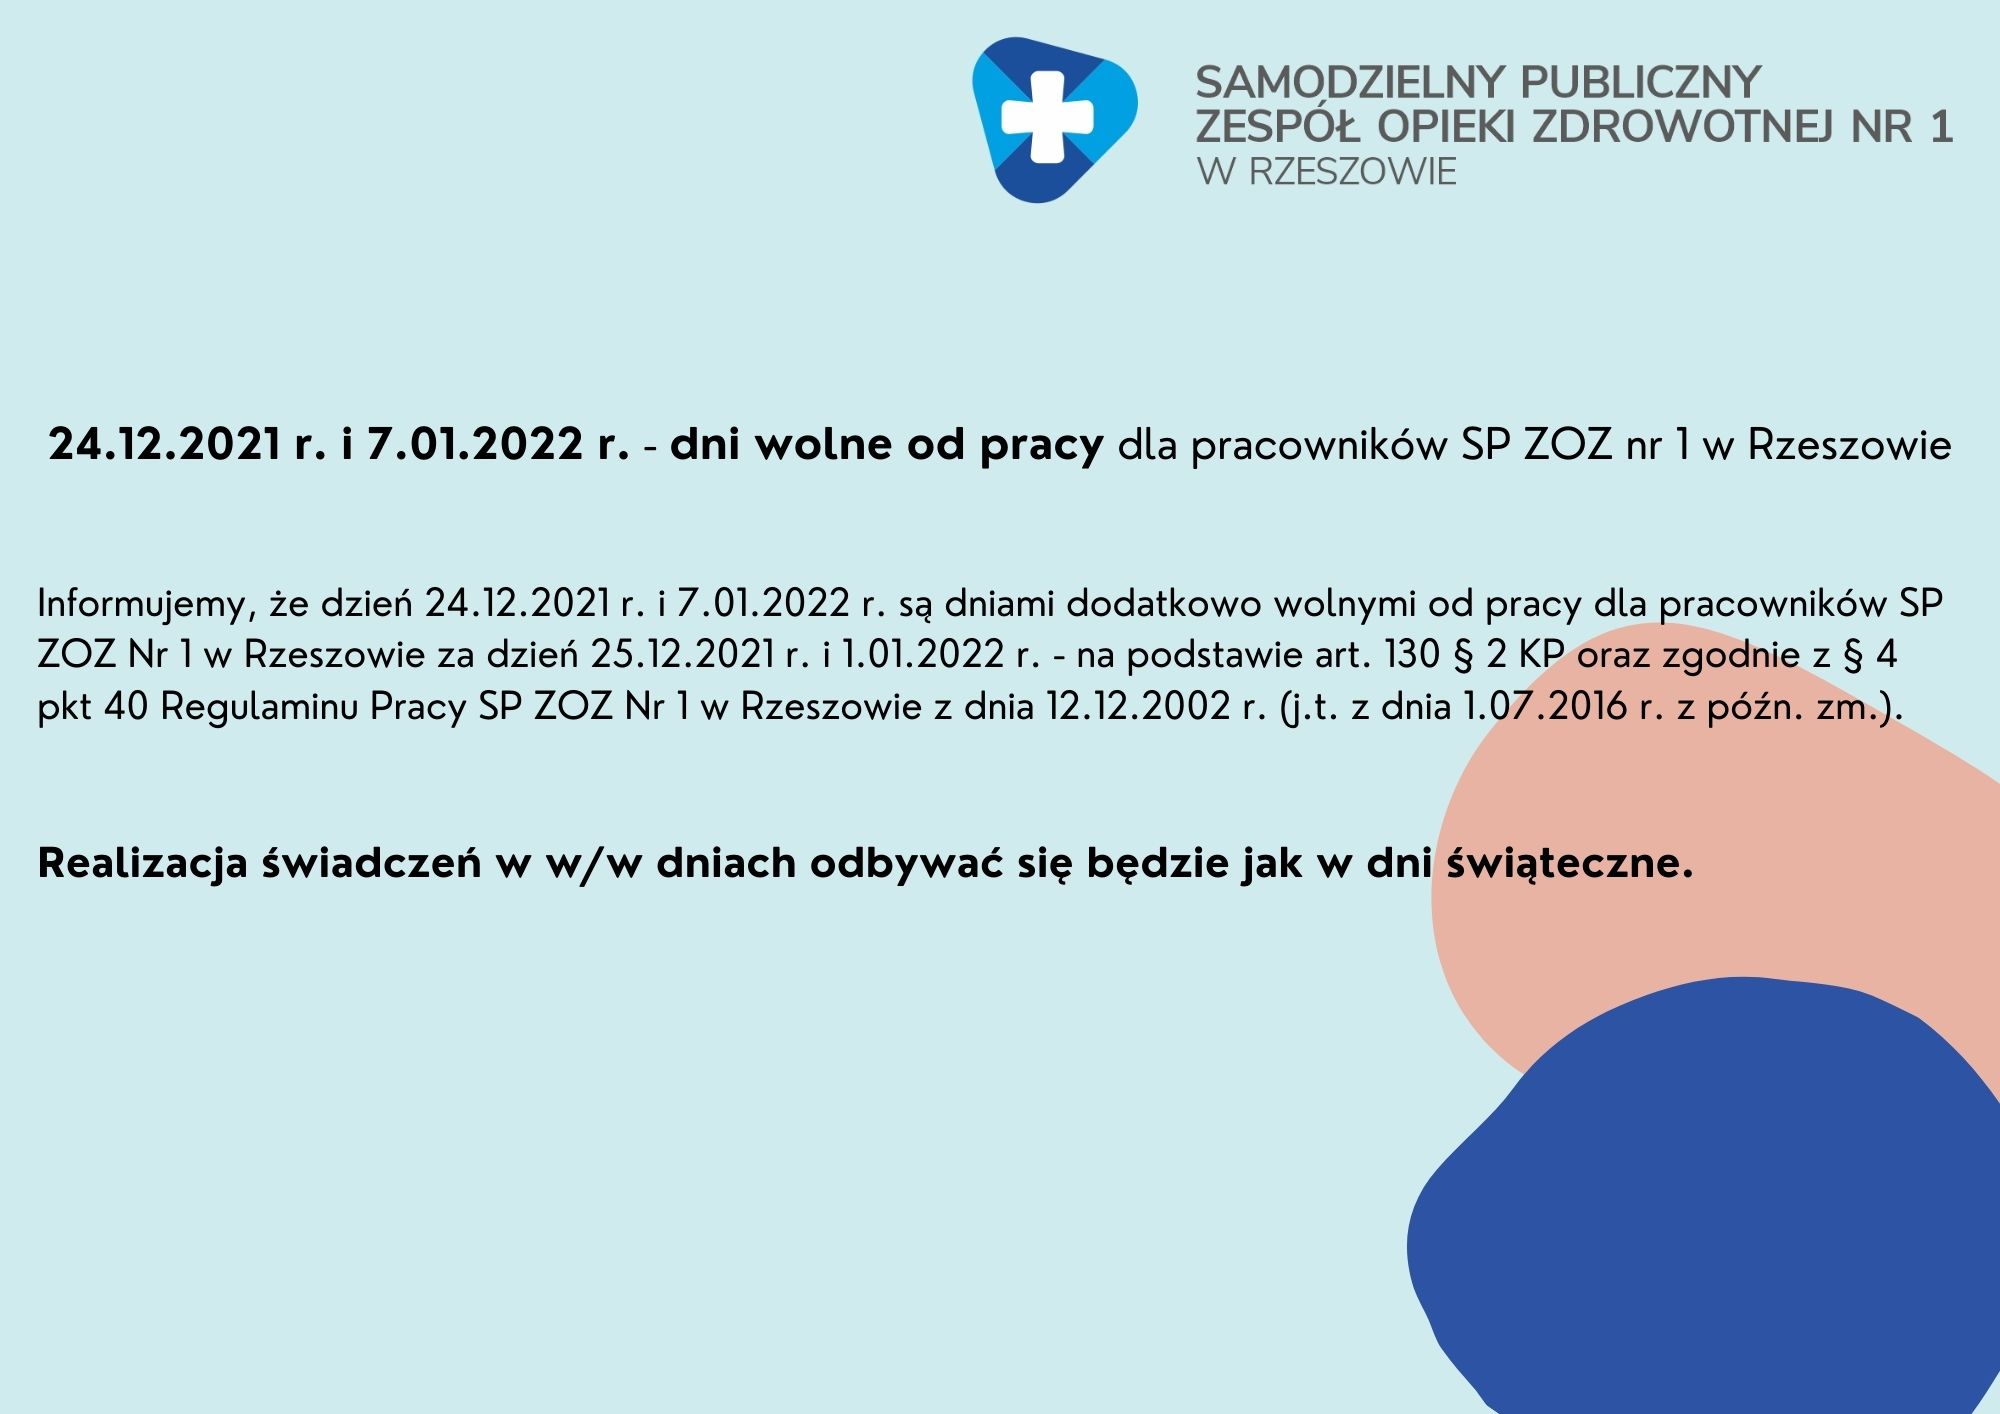 24.12.2021 r. i 7.01.2022 r. - dni wolne od pracy dla pracowników SP ZOZ nr 1 w Rzeszowie. Realizacja świadczeń w w/w dniu odbywać się będzie jak w dni świąteczne.